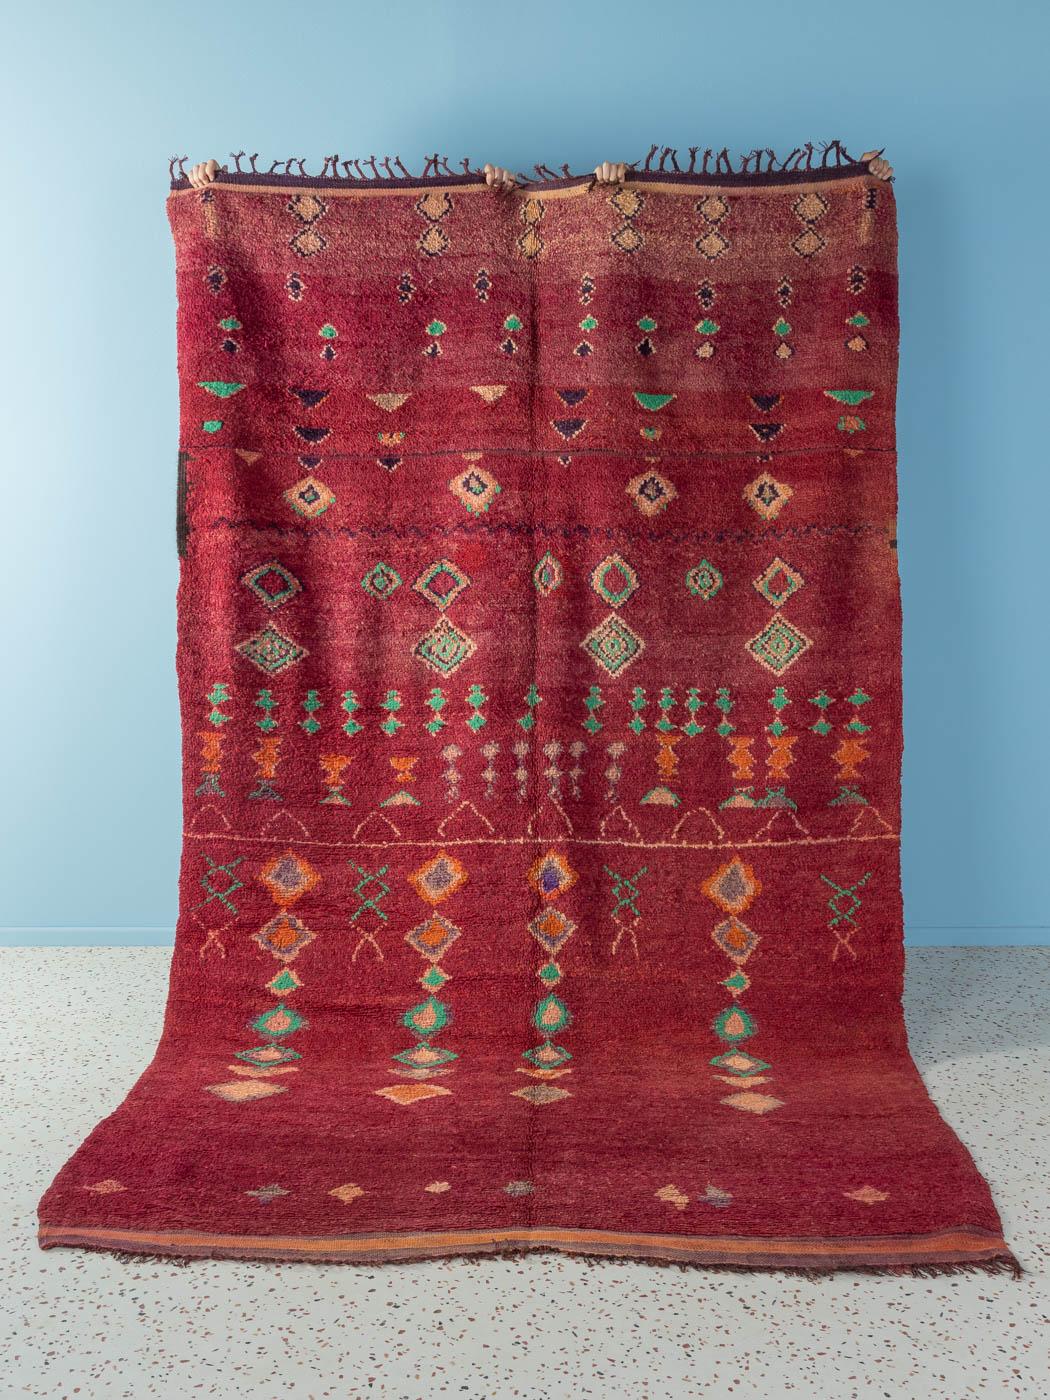 Dieser Vintage Ourika ist ein Teppich aus 100 % Wolle - weich und angenehm zu tragen. Unsere Berberteppiche sind handgefertigt, ein Knoten nach dem anderen. Jeder unserer Berberteppiche ist ein langlebiges Einzelstück, das auf nachhaltige Weise aus